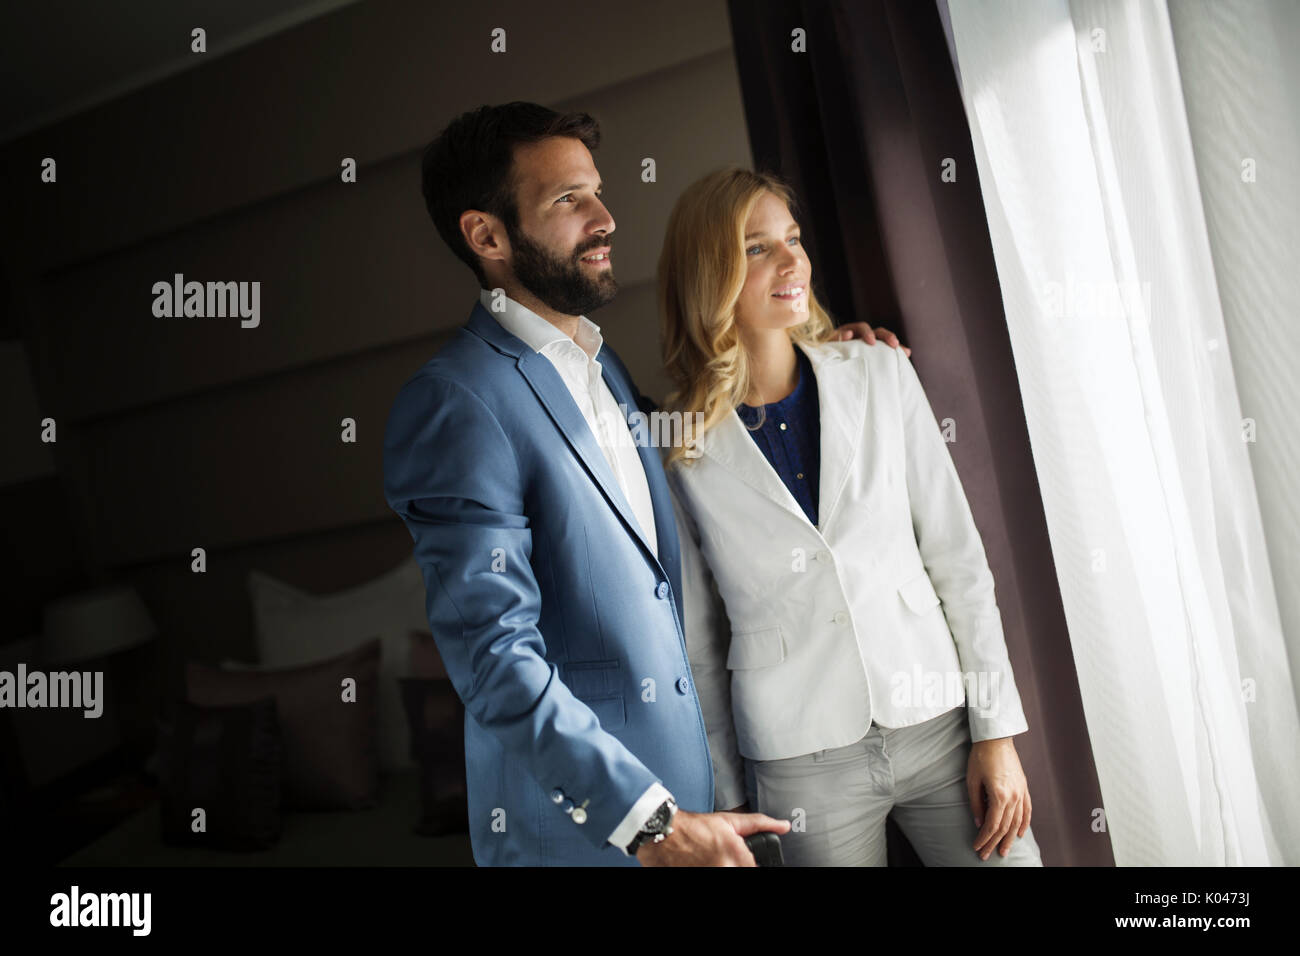 Bild von Kaufmann und Kauffrau im Hotel Zimmer Stockfoto